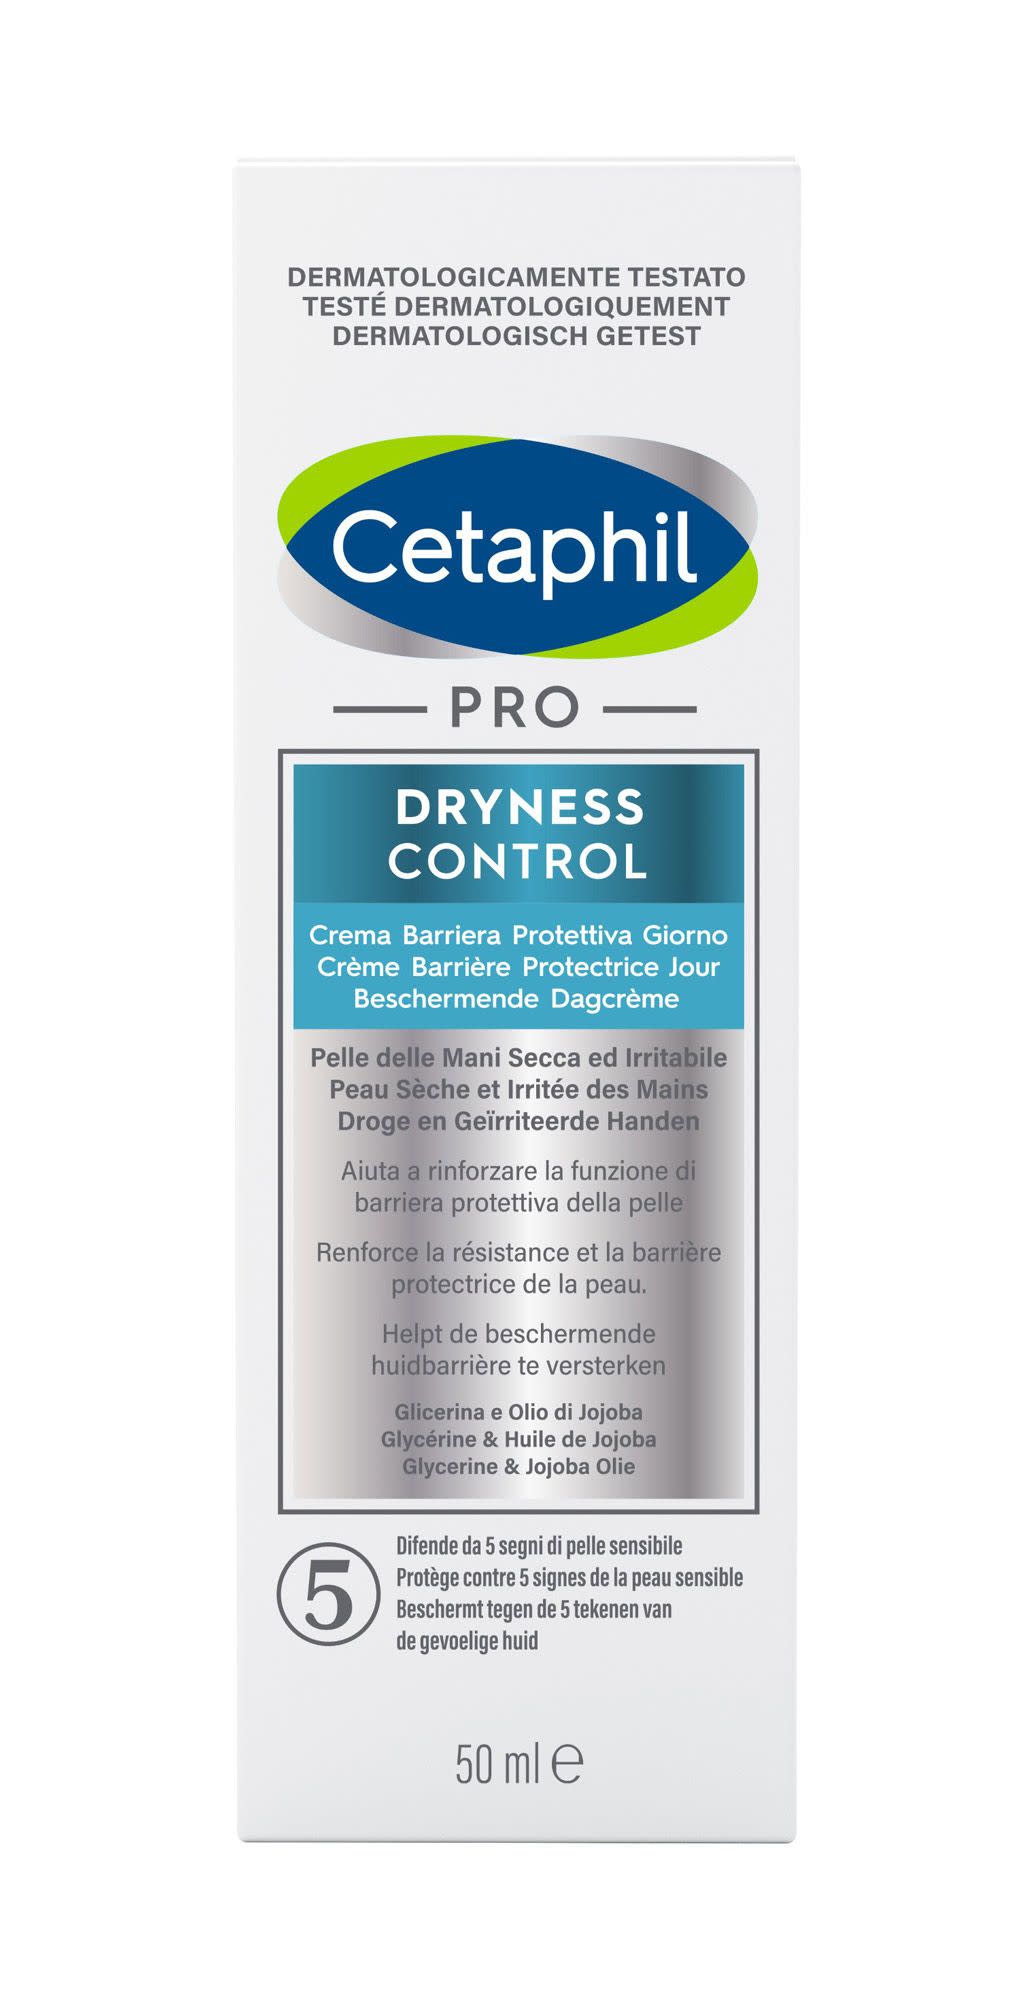 978434138 - Cetaphil Pro Dryness Control Crema Mani Protettiva Giorno 50ml - 4708471_2.jpg